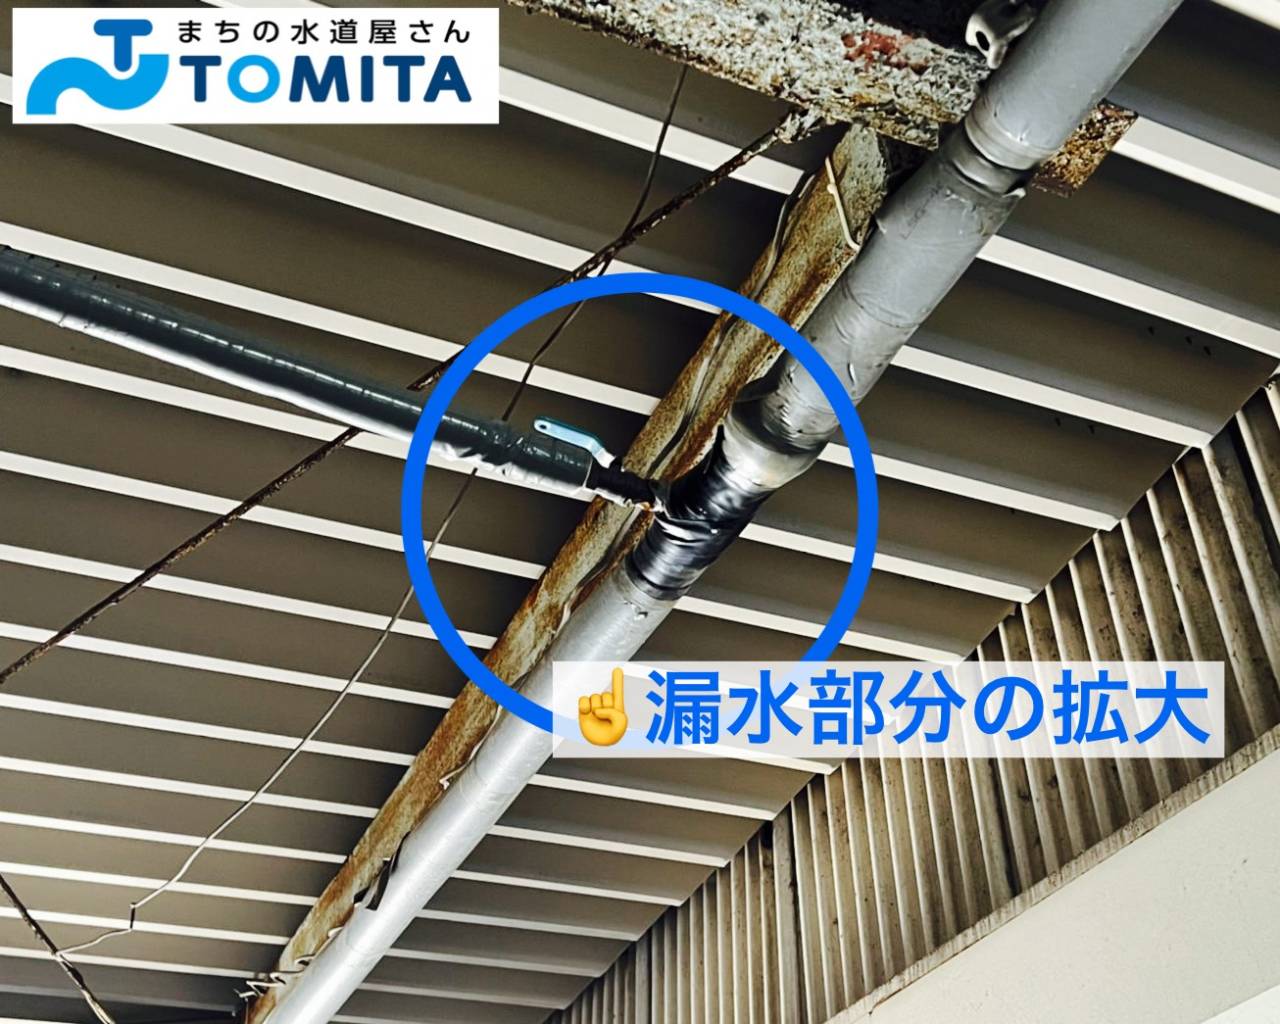 【施工前】工場等では天井から吊られて給水管が施工されていることがあります。